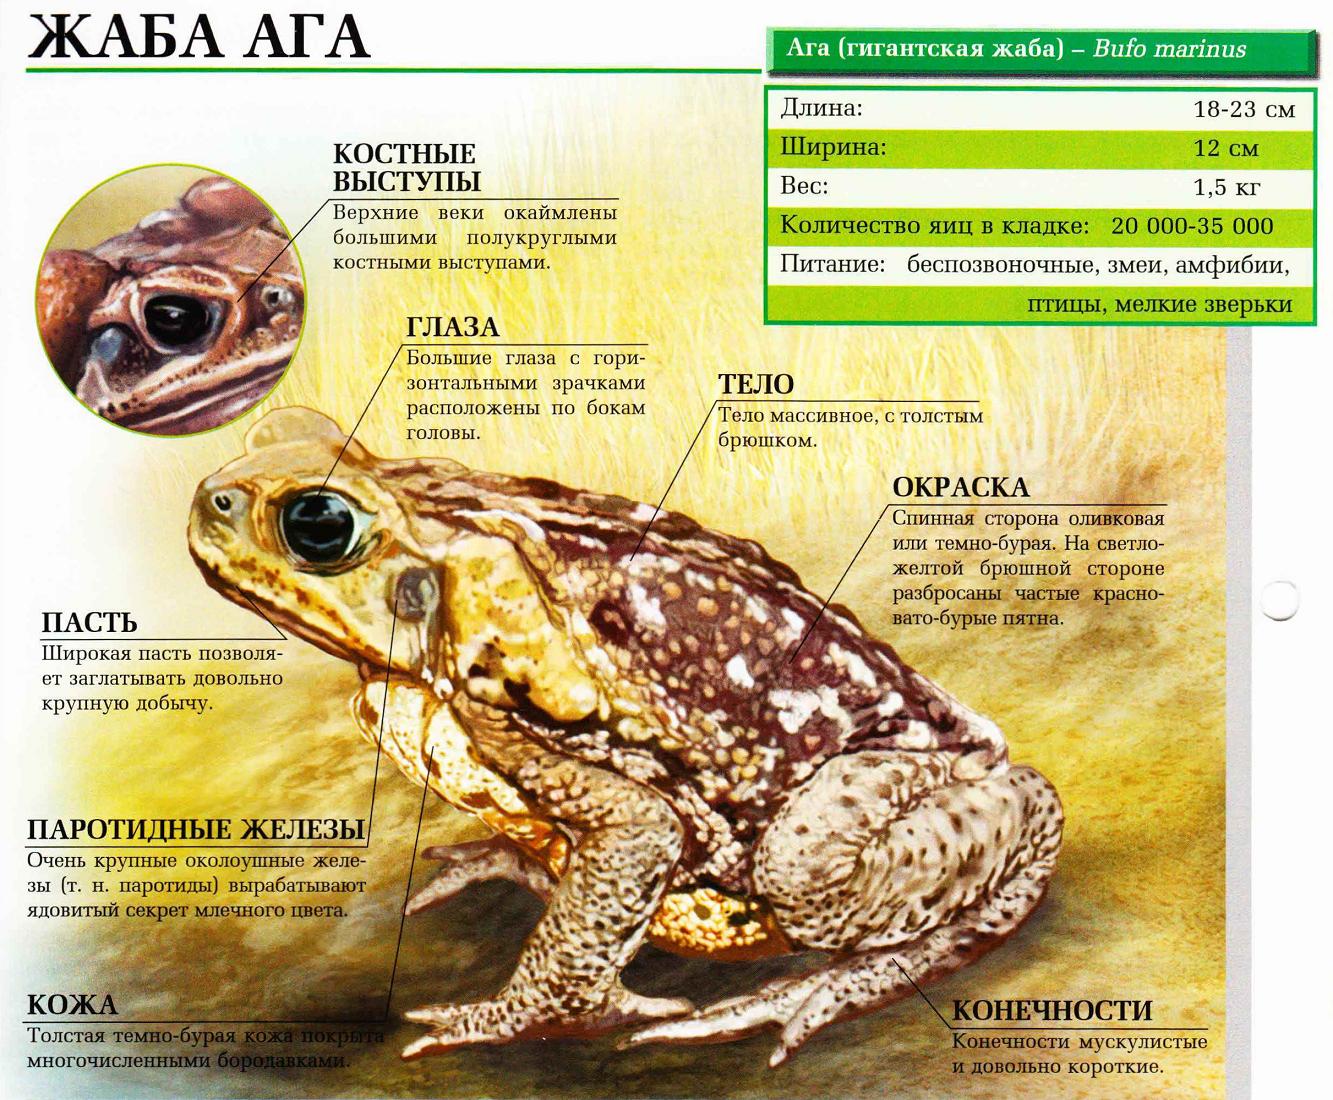 Жаба ага – одна из самых крупных жаб в мире.:::Жаба ага.